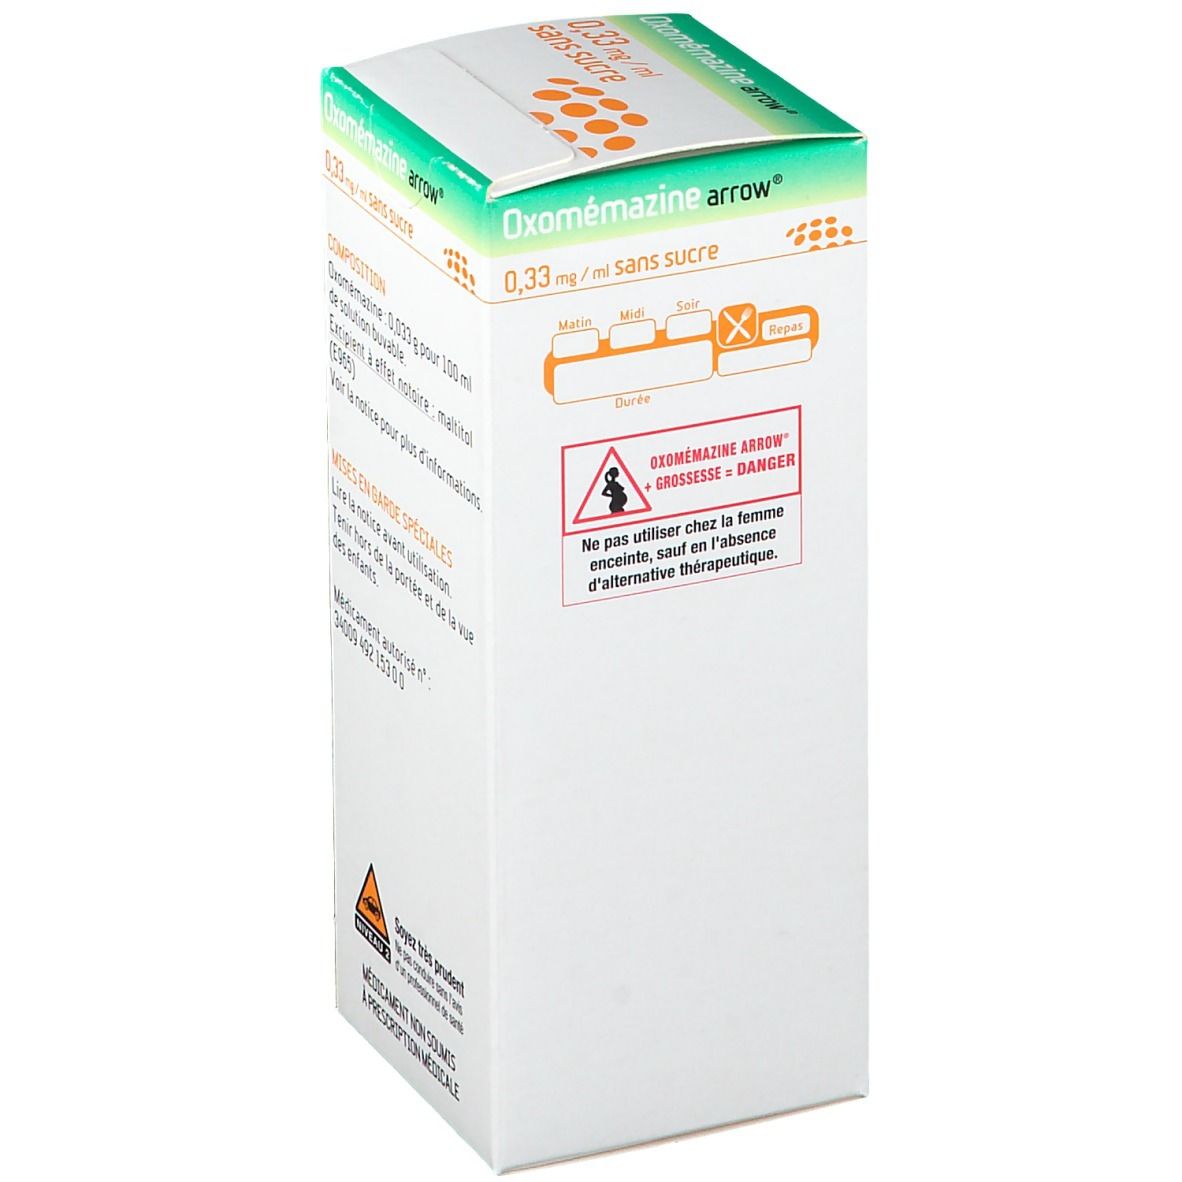 arrow® Oxomémazine 0,33 mg/ml sans sucre